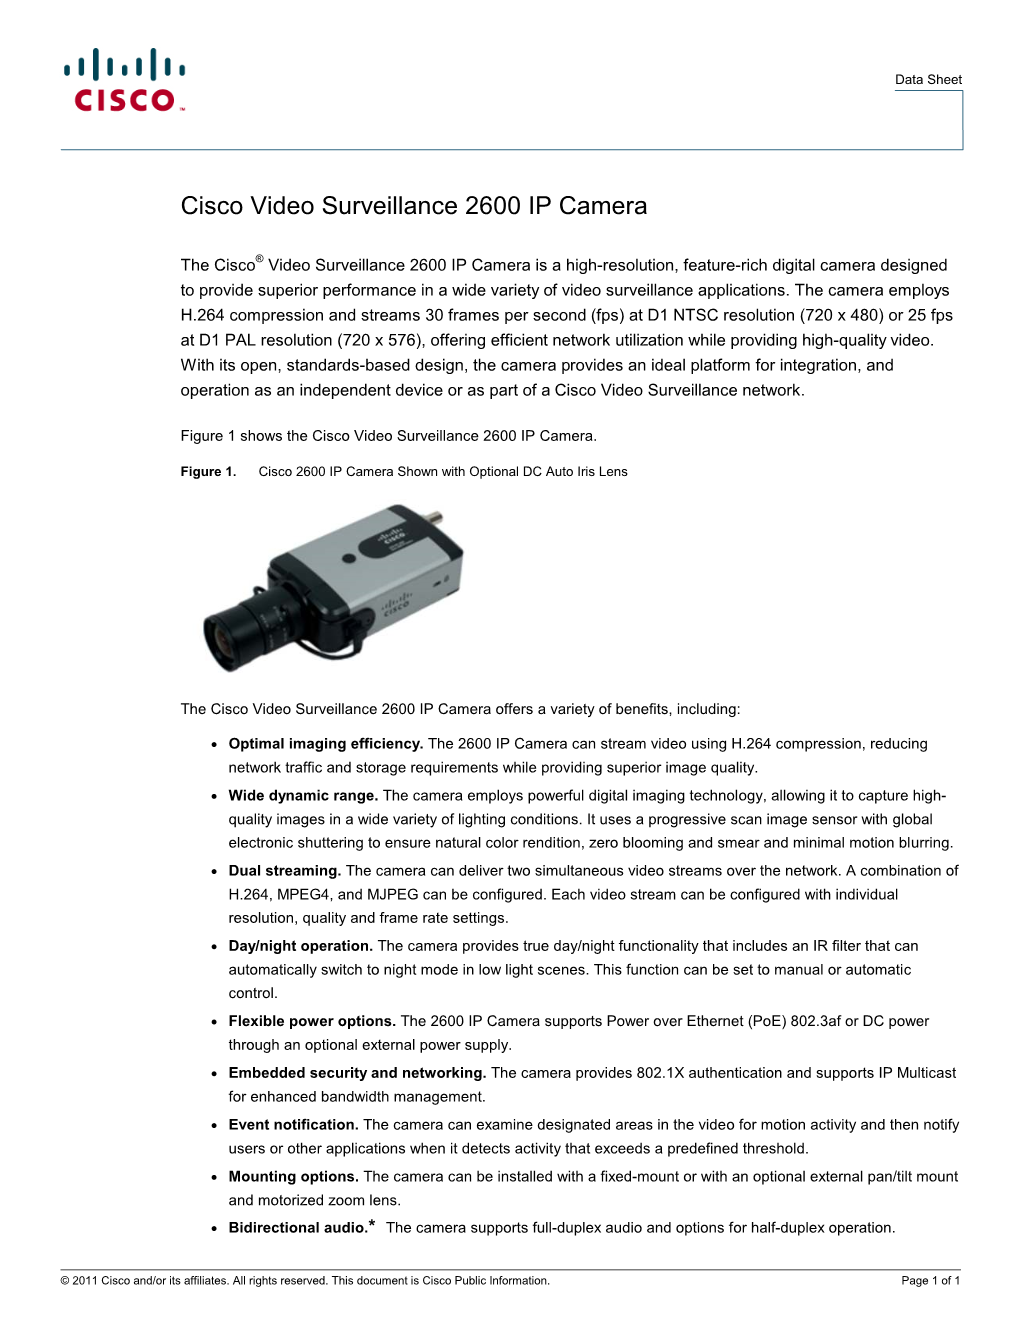 Cisco Video Surveillance 2600 IP Camera